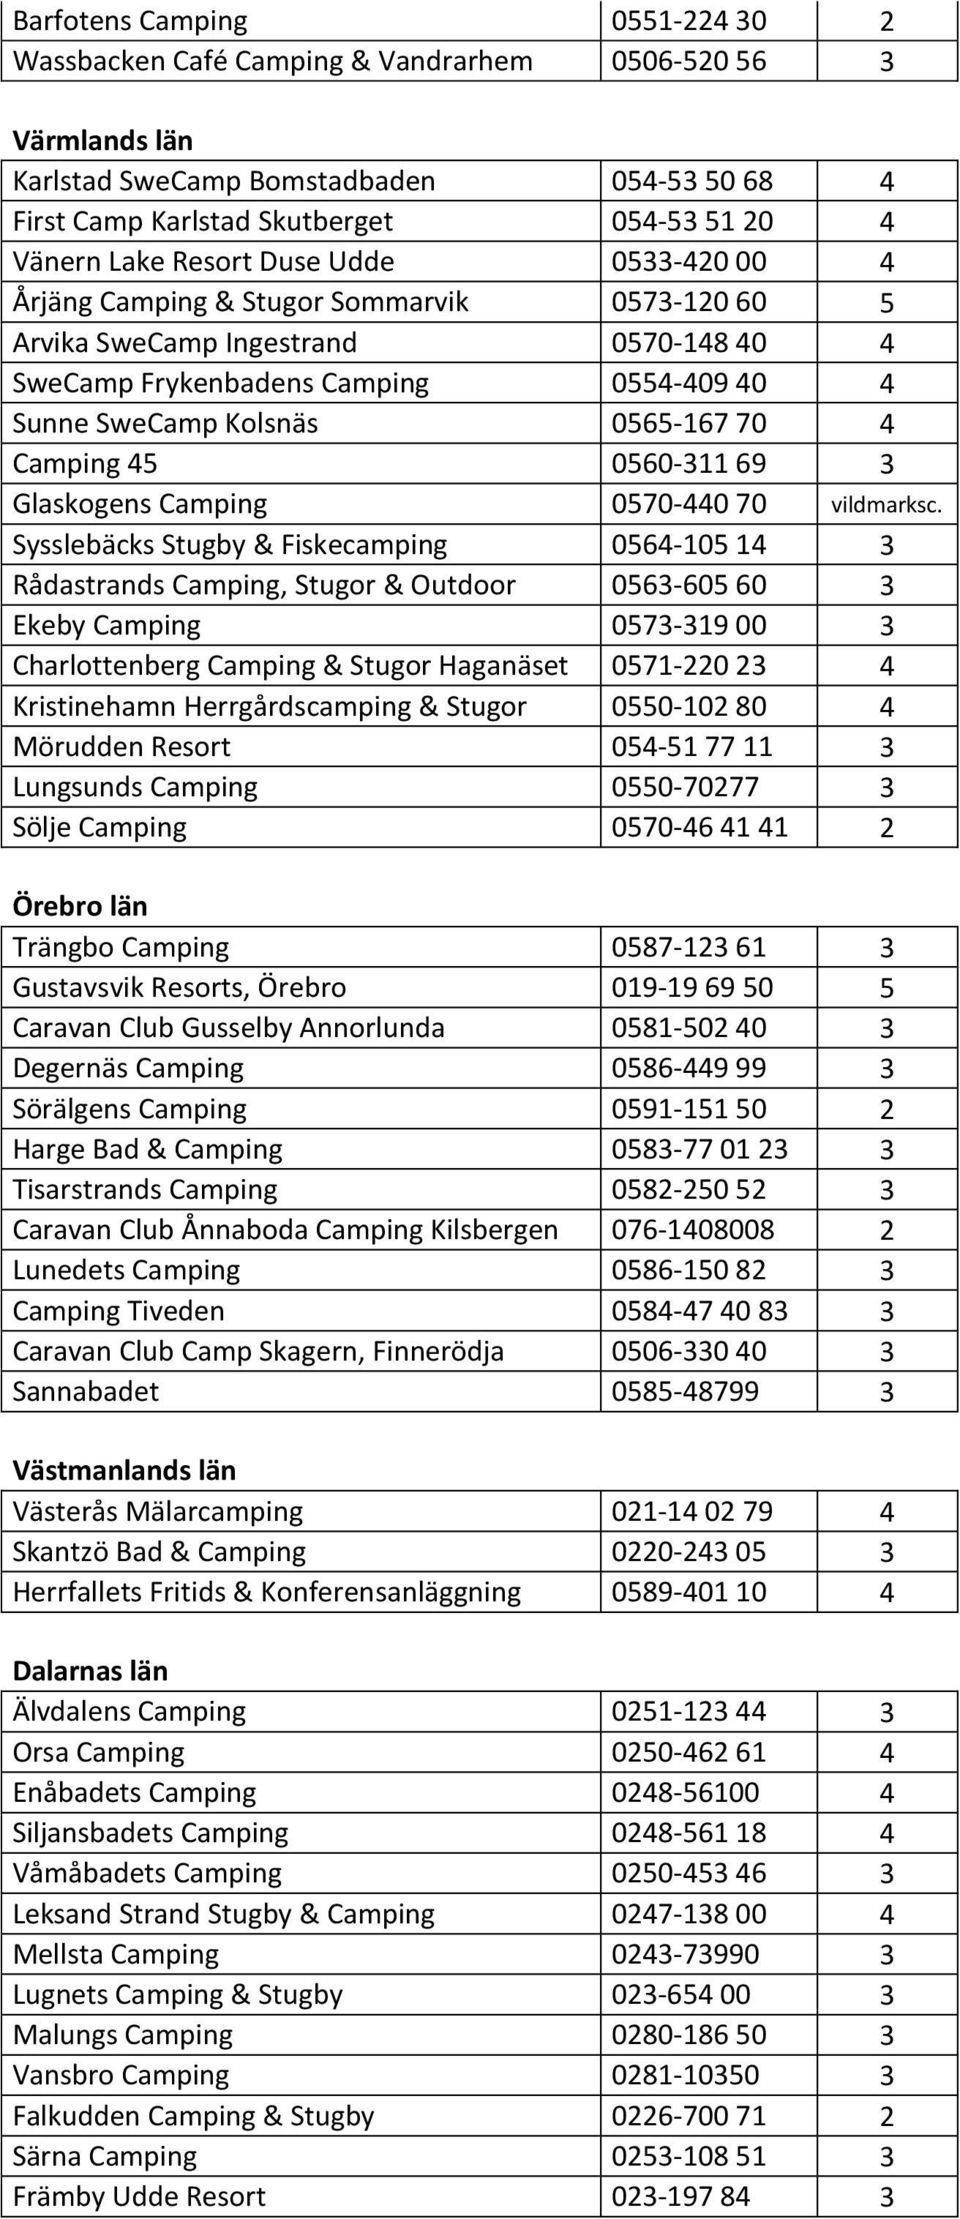 Camping 45 0560-311 69 3 Glaskogens Camping 0570-440 70 vildmarksc.